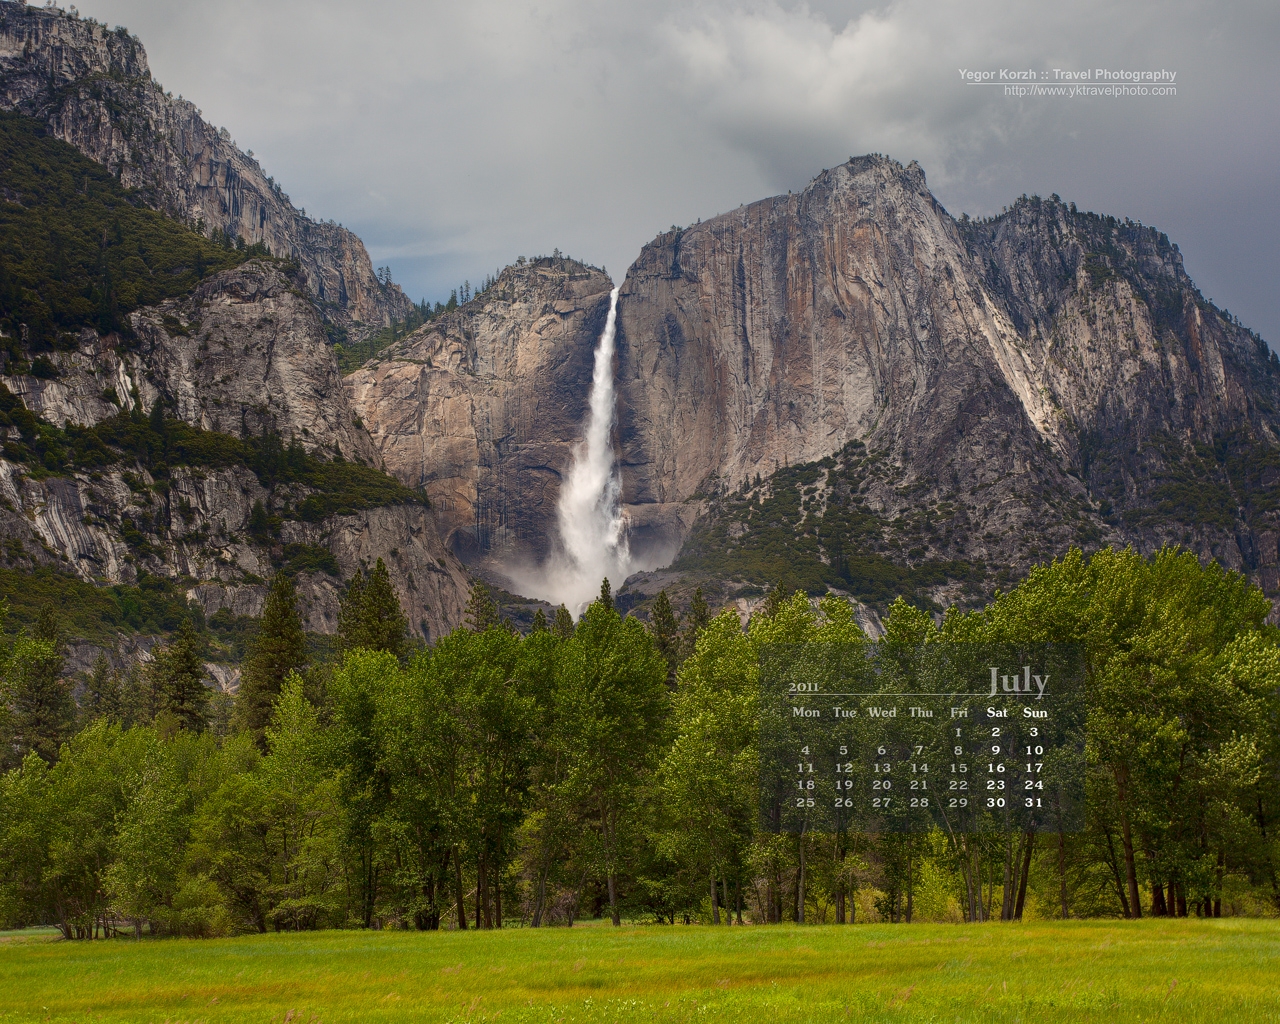 http://4.bp.blogspot.com/-HdGUW8_Ls1o/Tg0-FHUC8gI/AAAAAAAADjs/XVDs0PNQDik/s1600/Yosemite-Falls-July-2011-1280x1024-en%255B1%255D.JPG